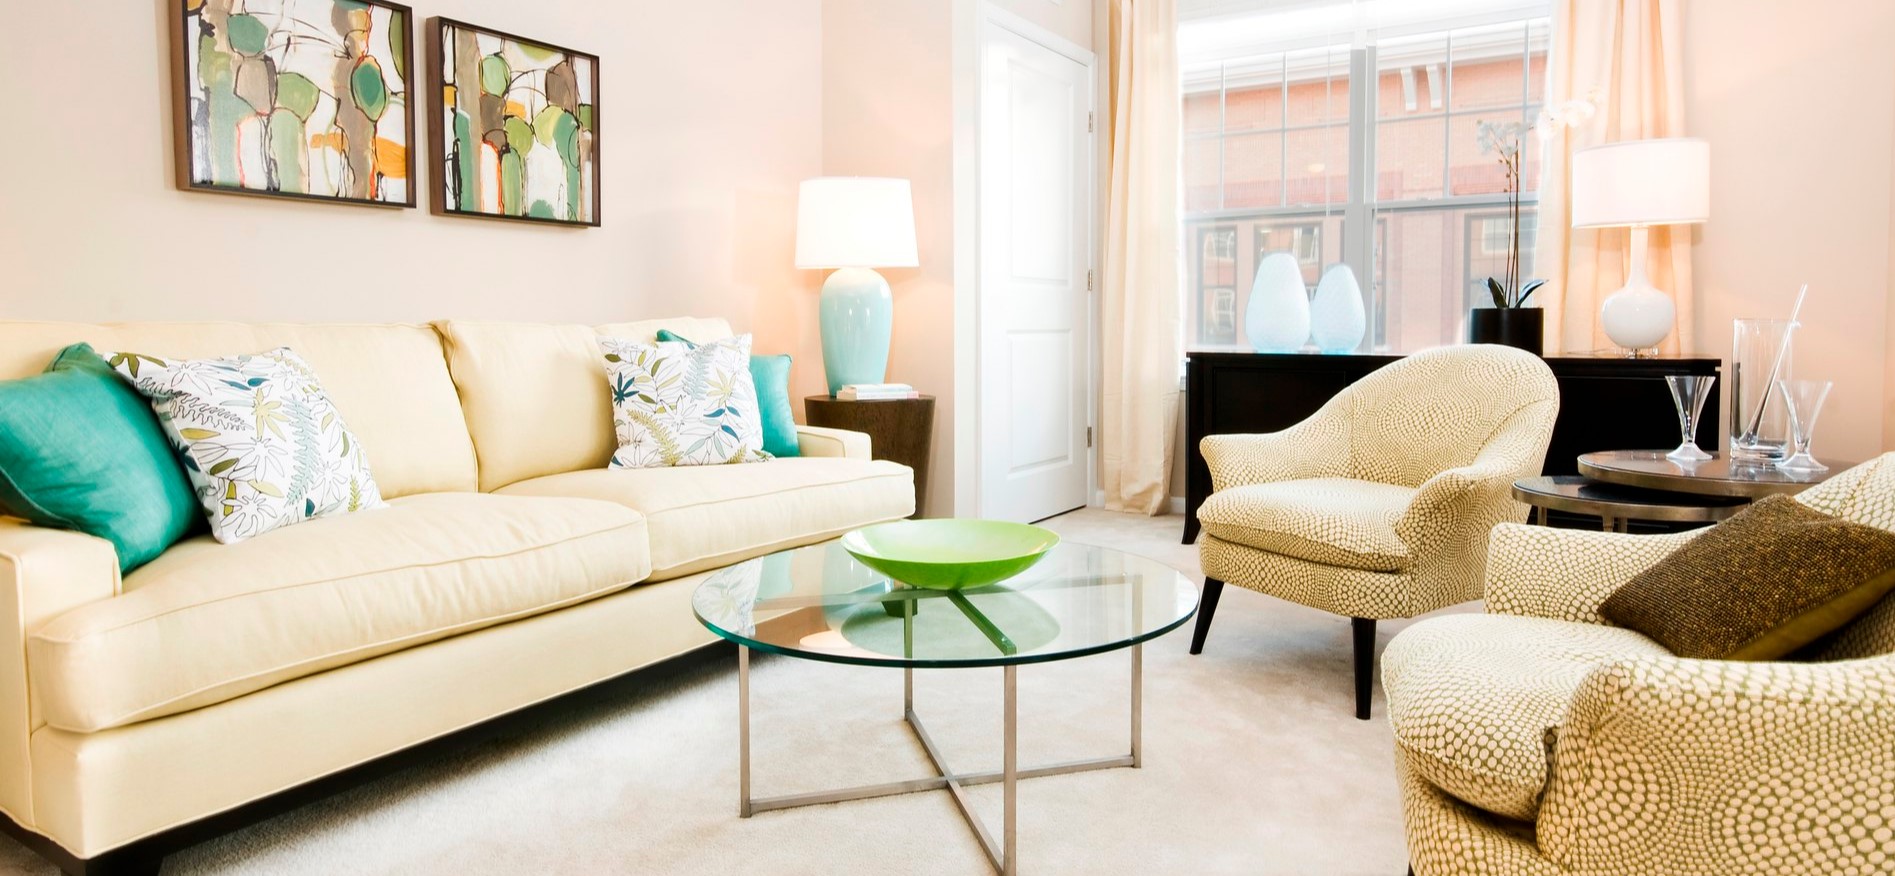 Белый диван можно декорировать подушками с цветными рисунками